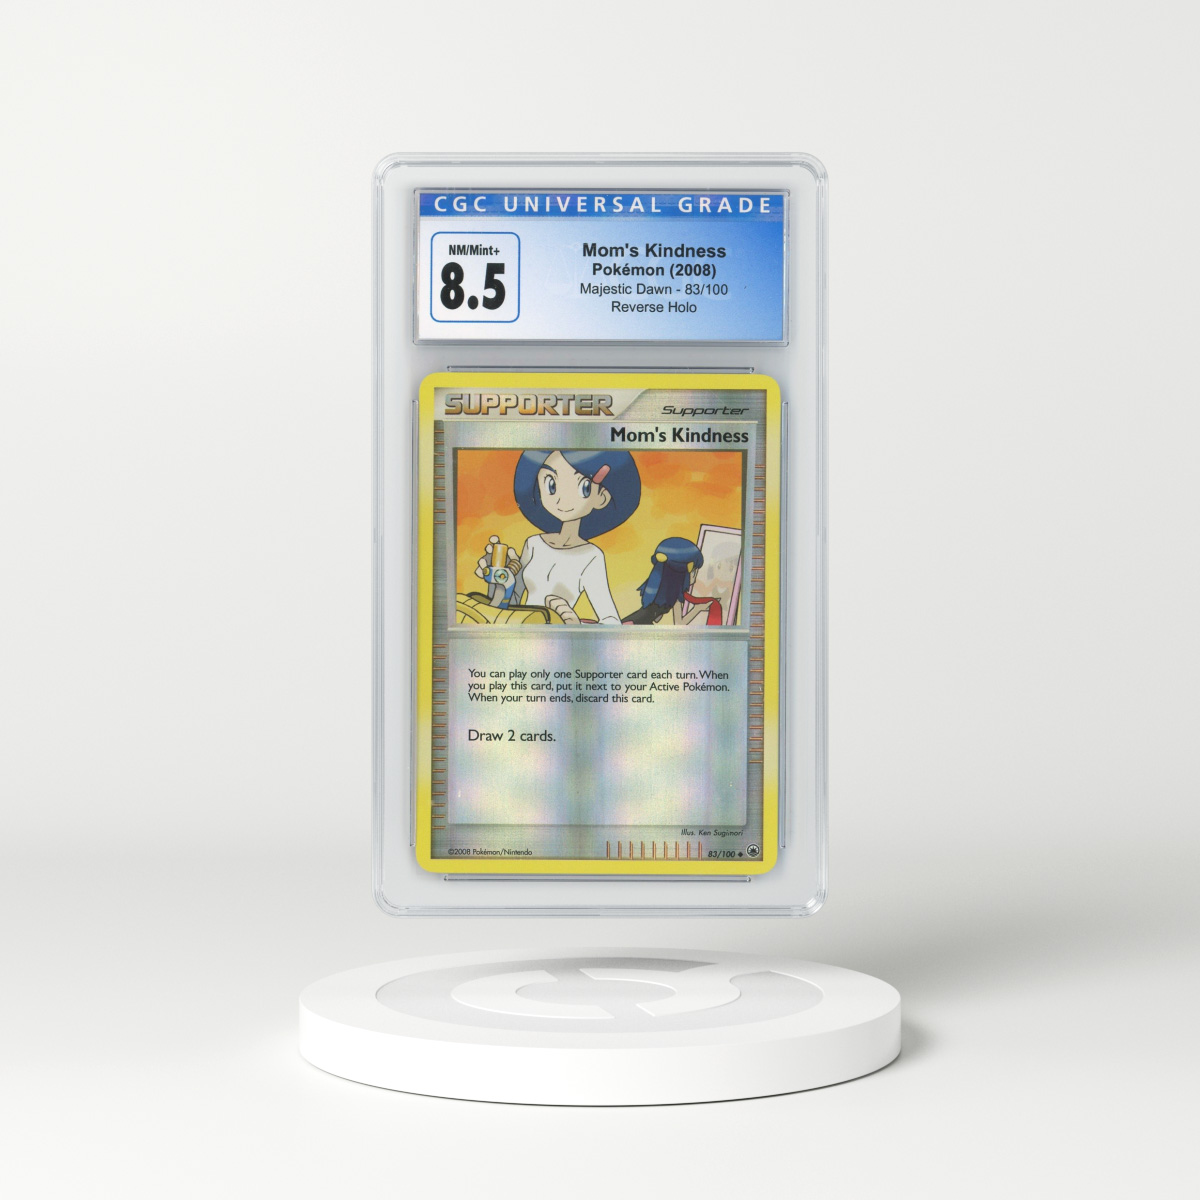 Unown [Reverse Holo] #55 Prices, Pokemon HeartGold & SoulSilver